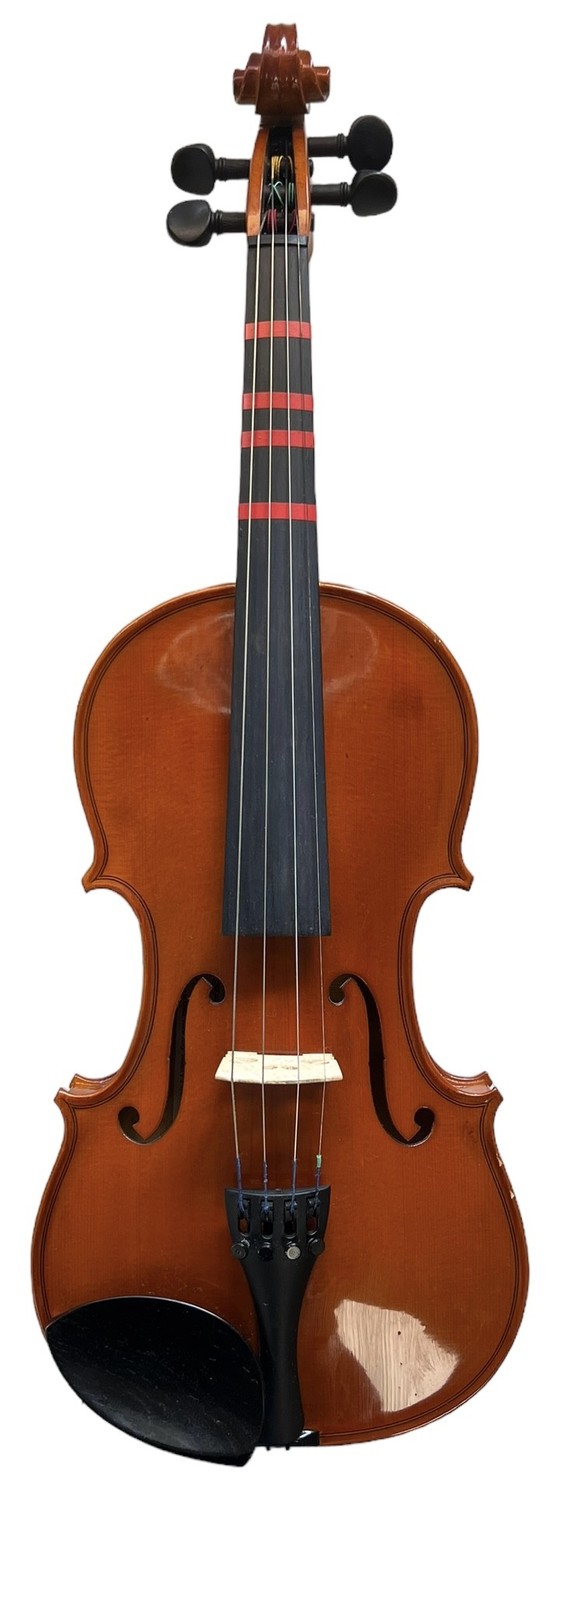 Primary image for Yamaha Violin V3 390954